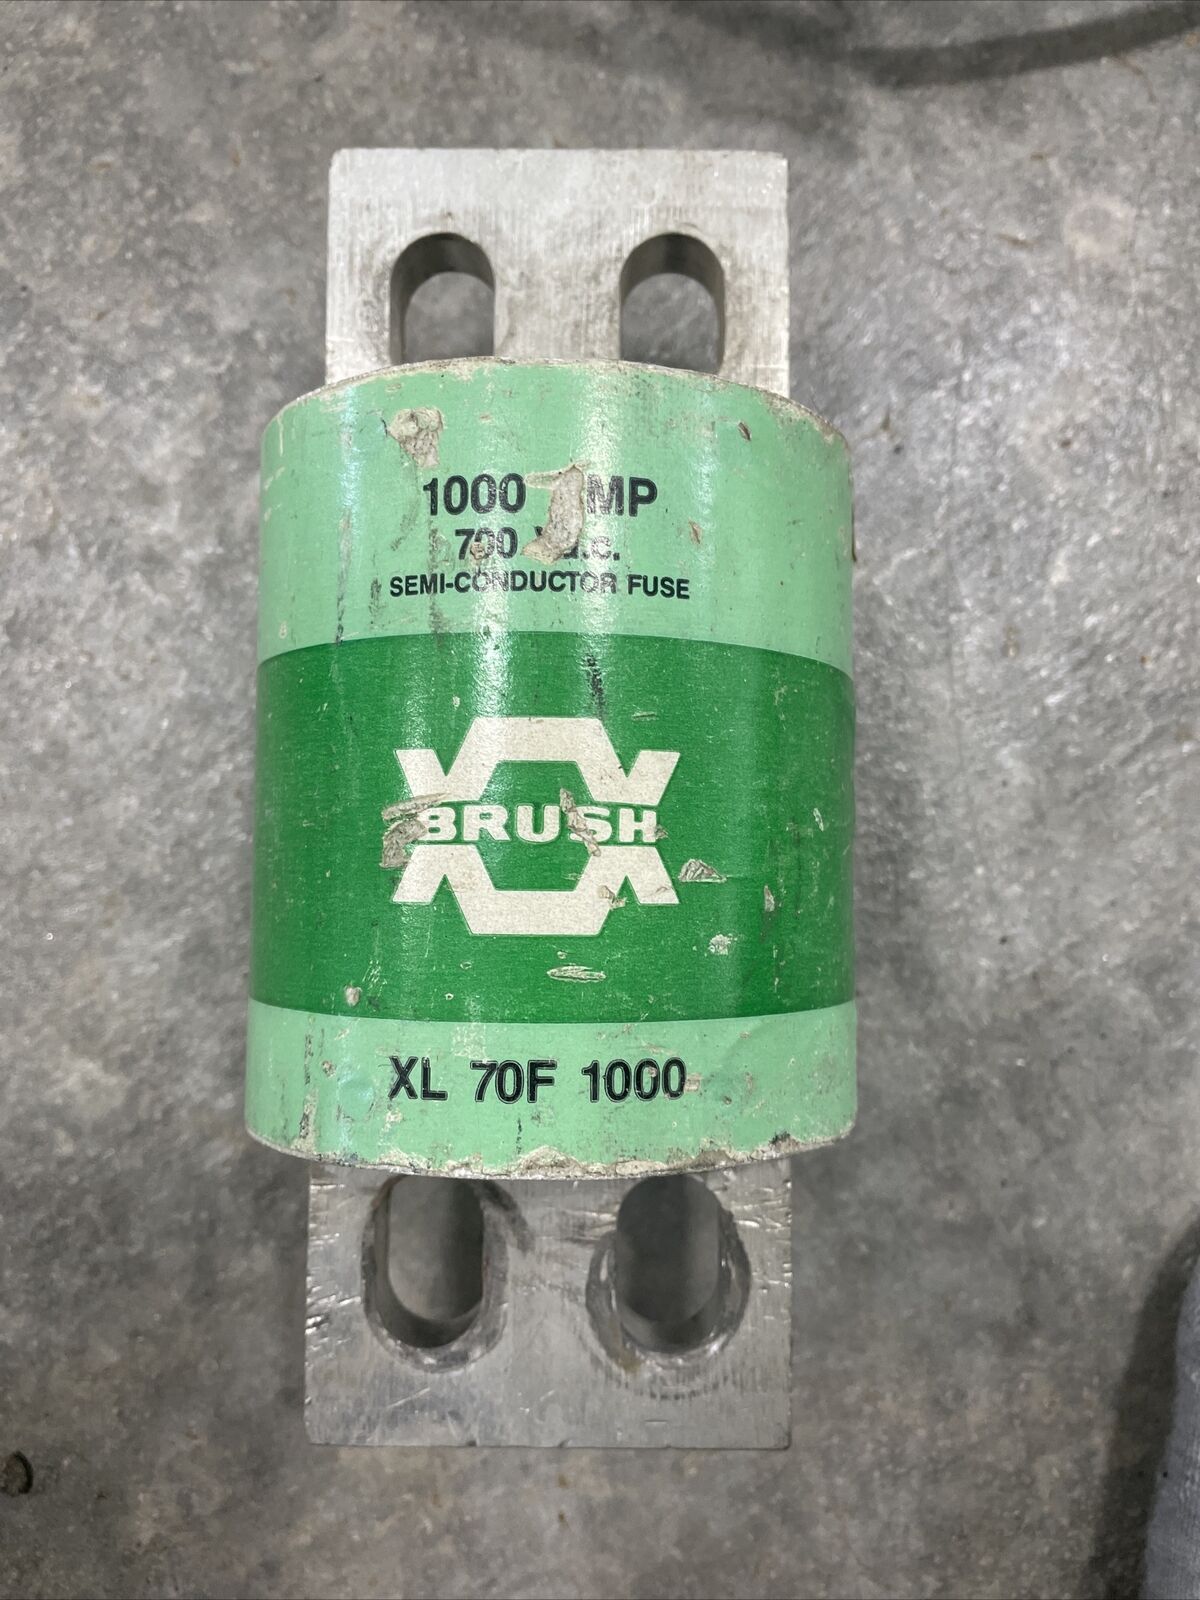 (1 UNUSED) Brush 1000 Amp 500 volt Semi-conductor fuse XL 70F 1000